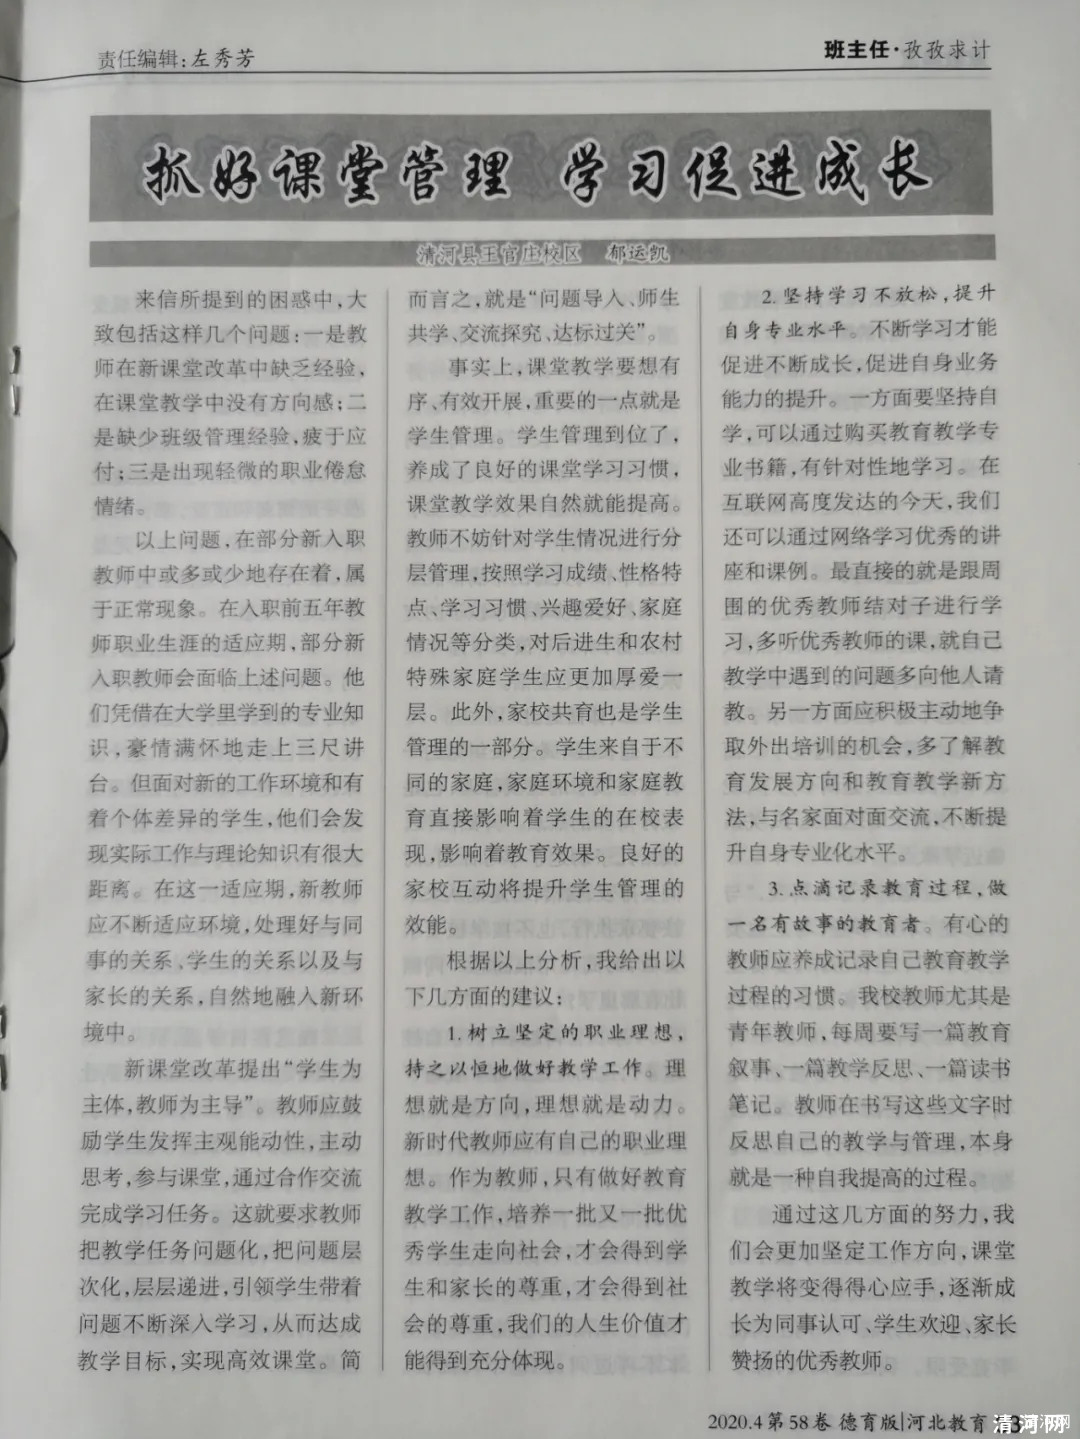 《河北教育》杂志报道我县王官庄校区农村教师专业成长经验